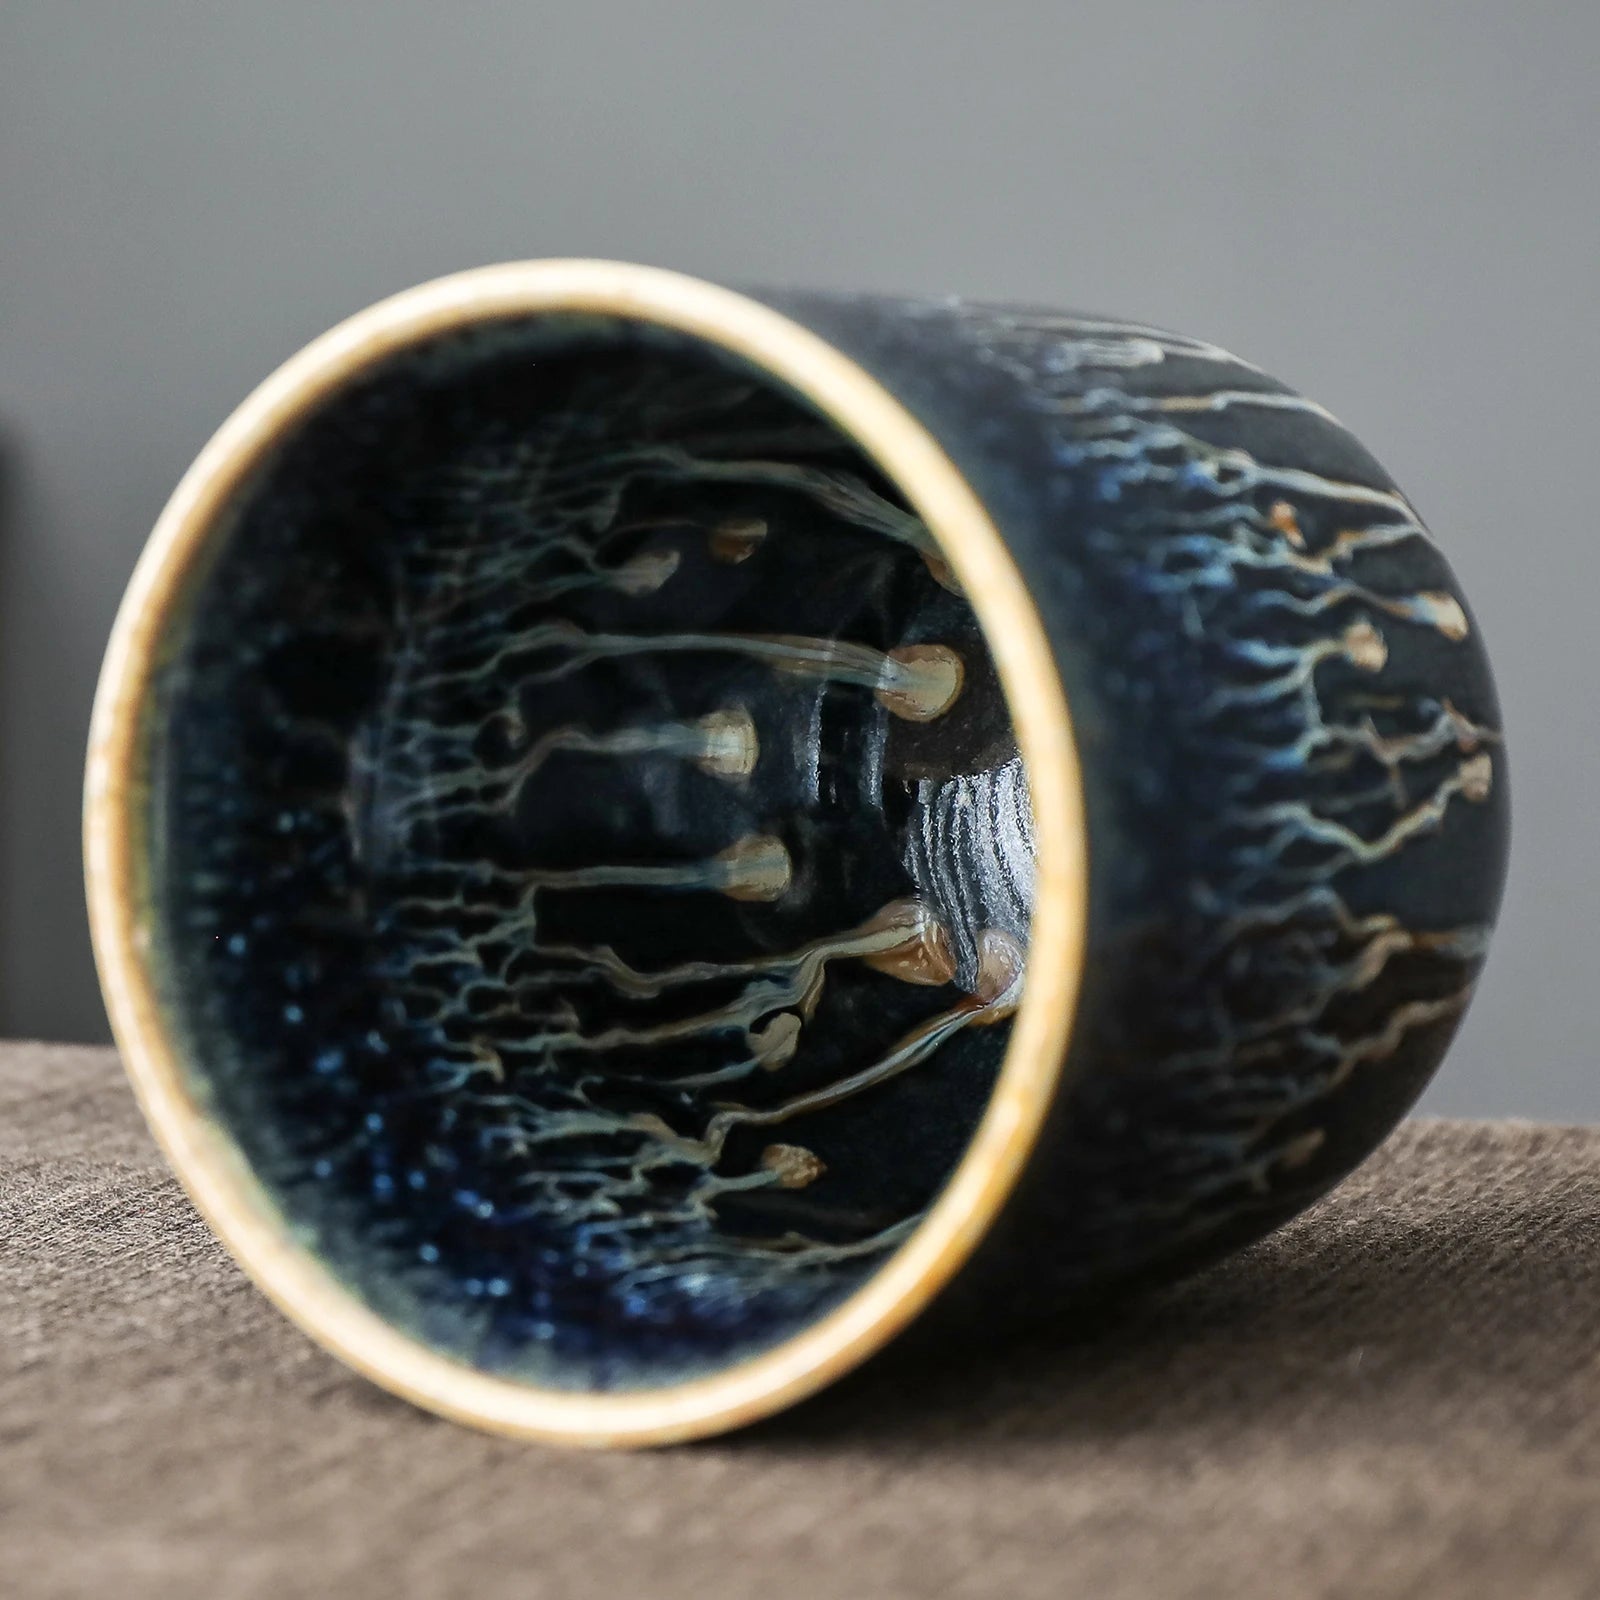 Ceramic Jianzhan Jian Ware Handmade Tenmoku Tea Cup 120ml